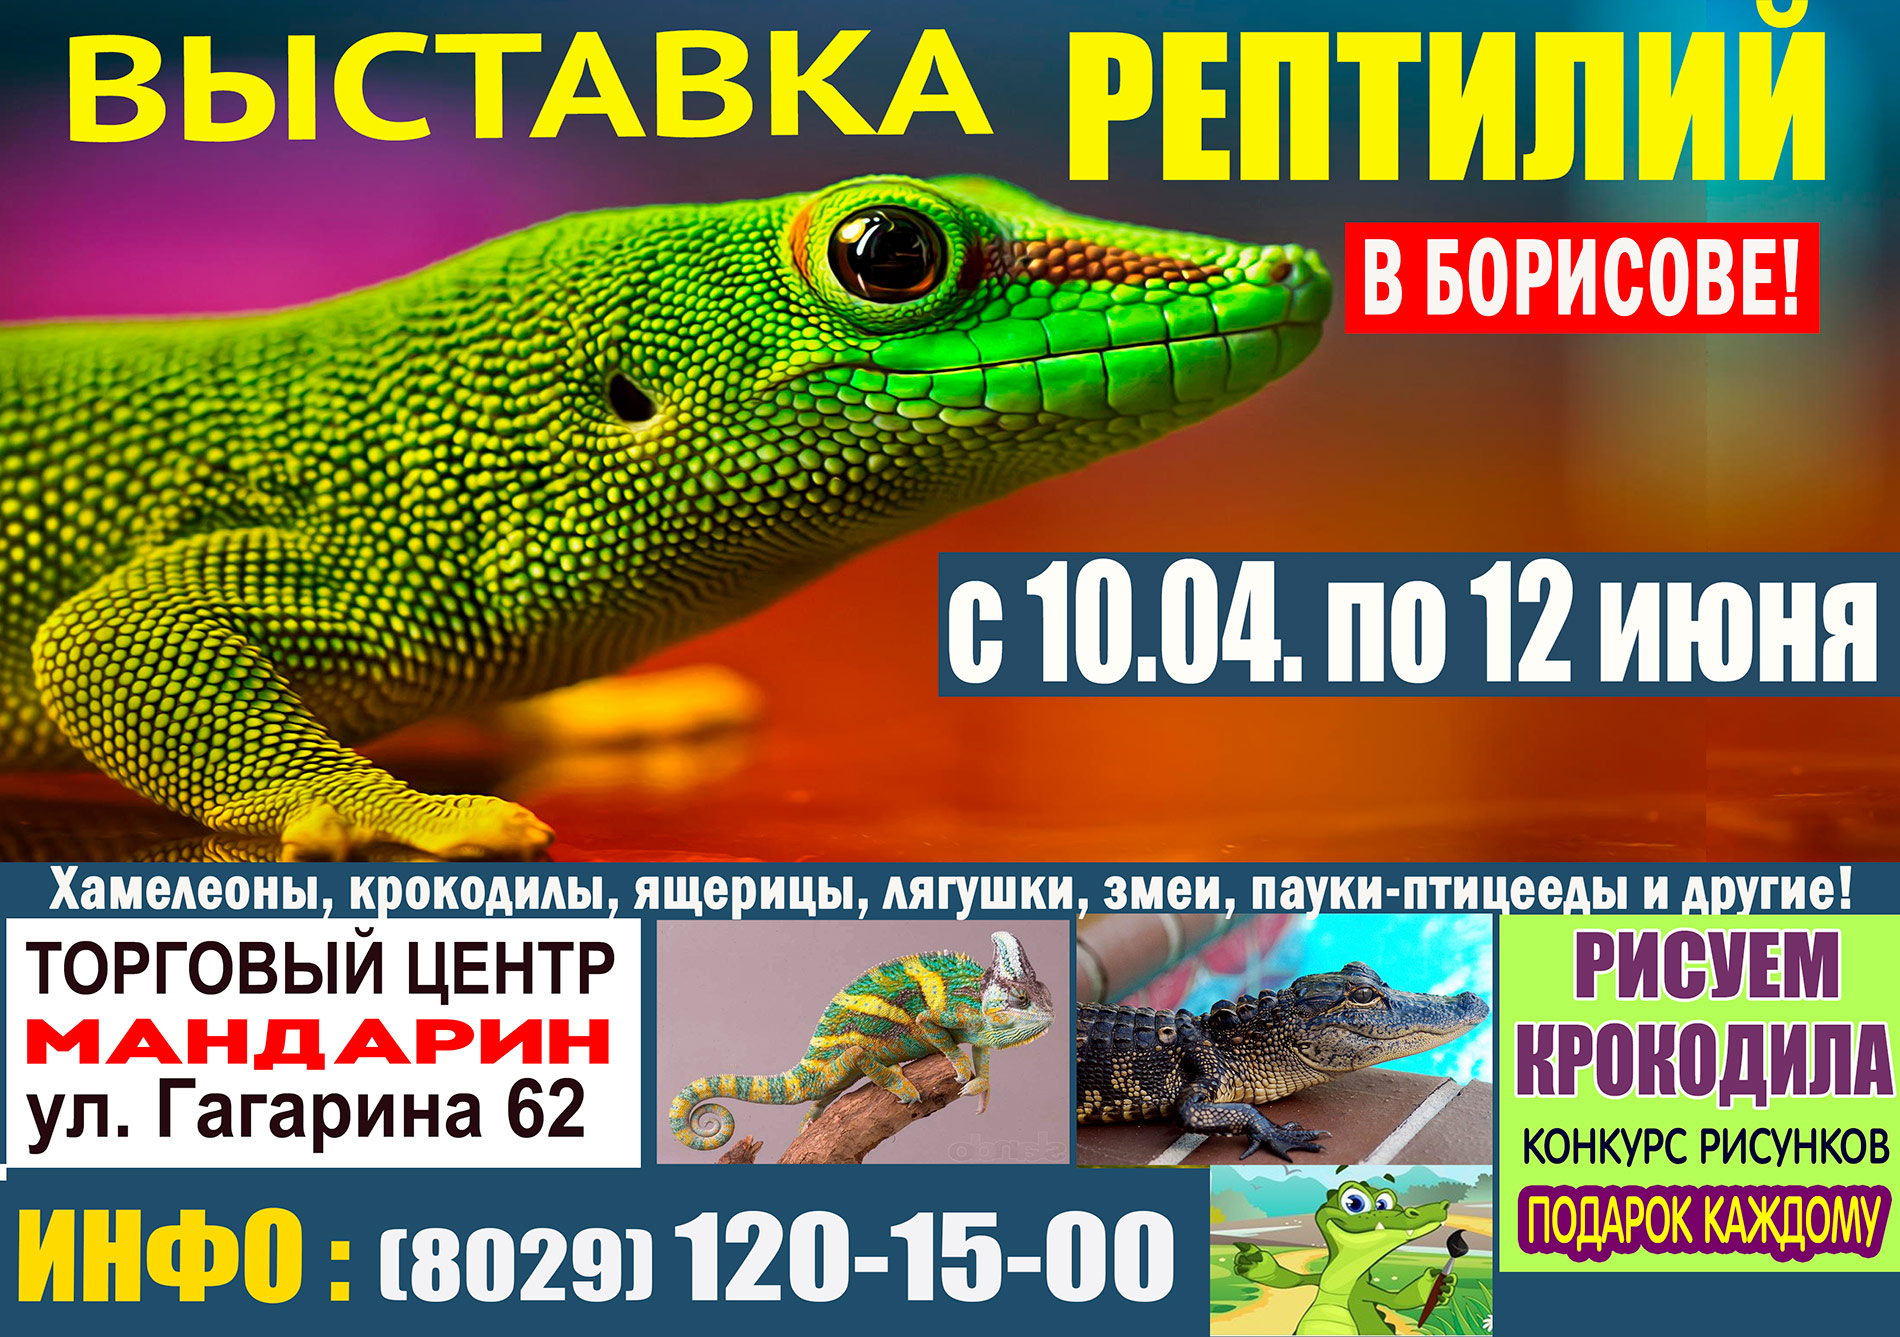 Покровский красноярск выставка рептилий. Крокодиловый хамелеон. Выставка рептилий Владивосток. Выставка ящериц. Выставка рептилий Абакан.